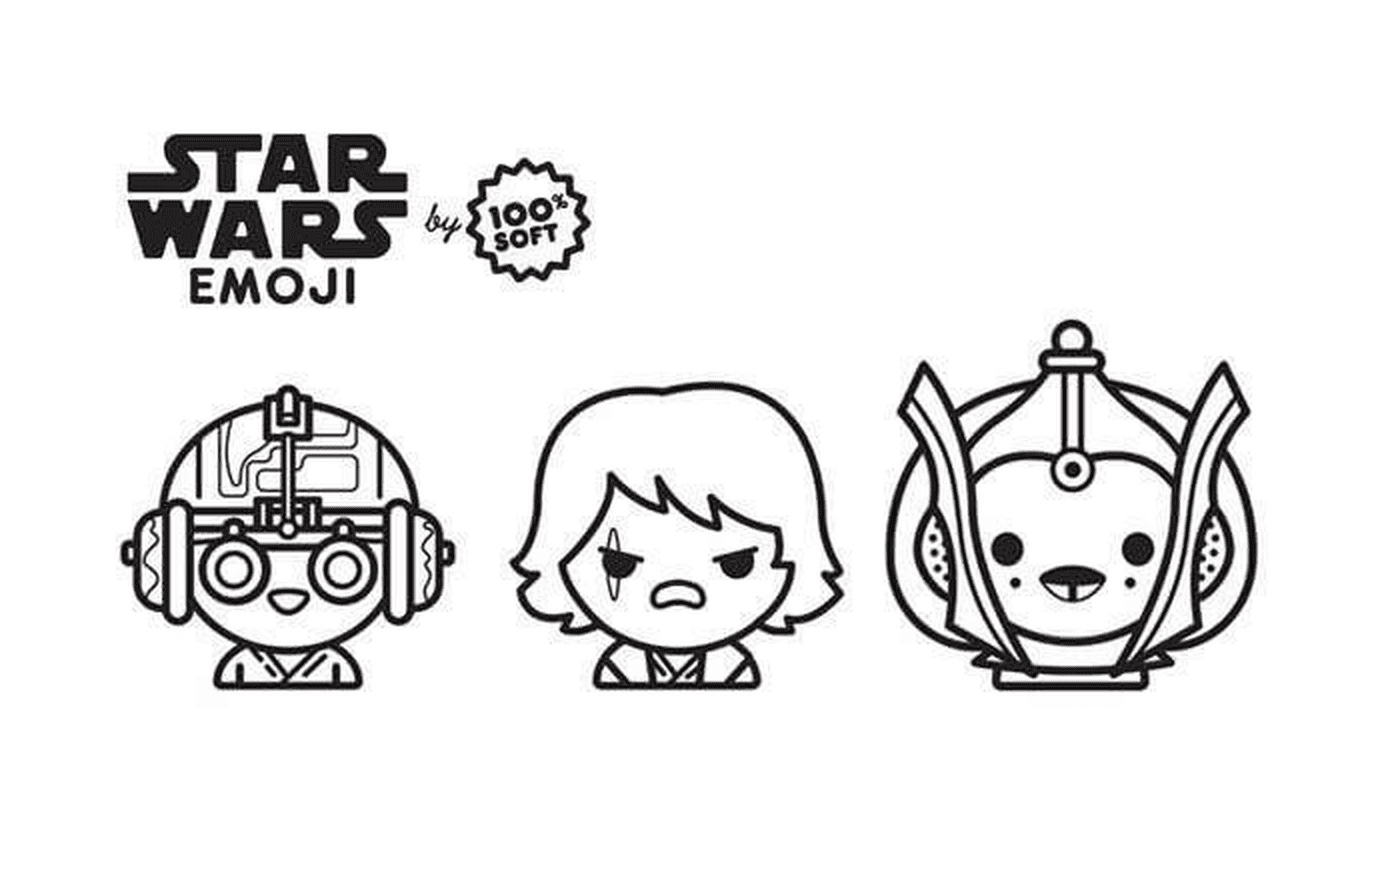  Saga de Emoji Star Wars, Anakin 